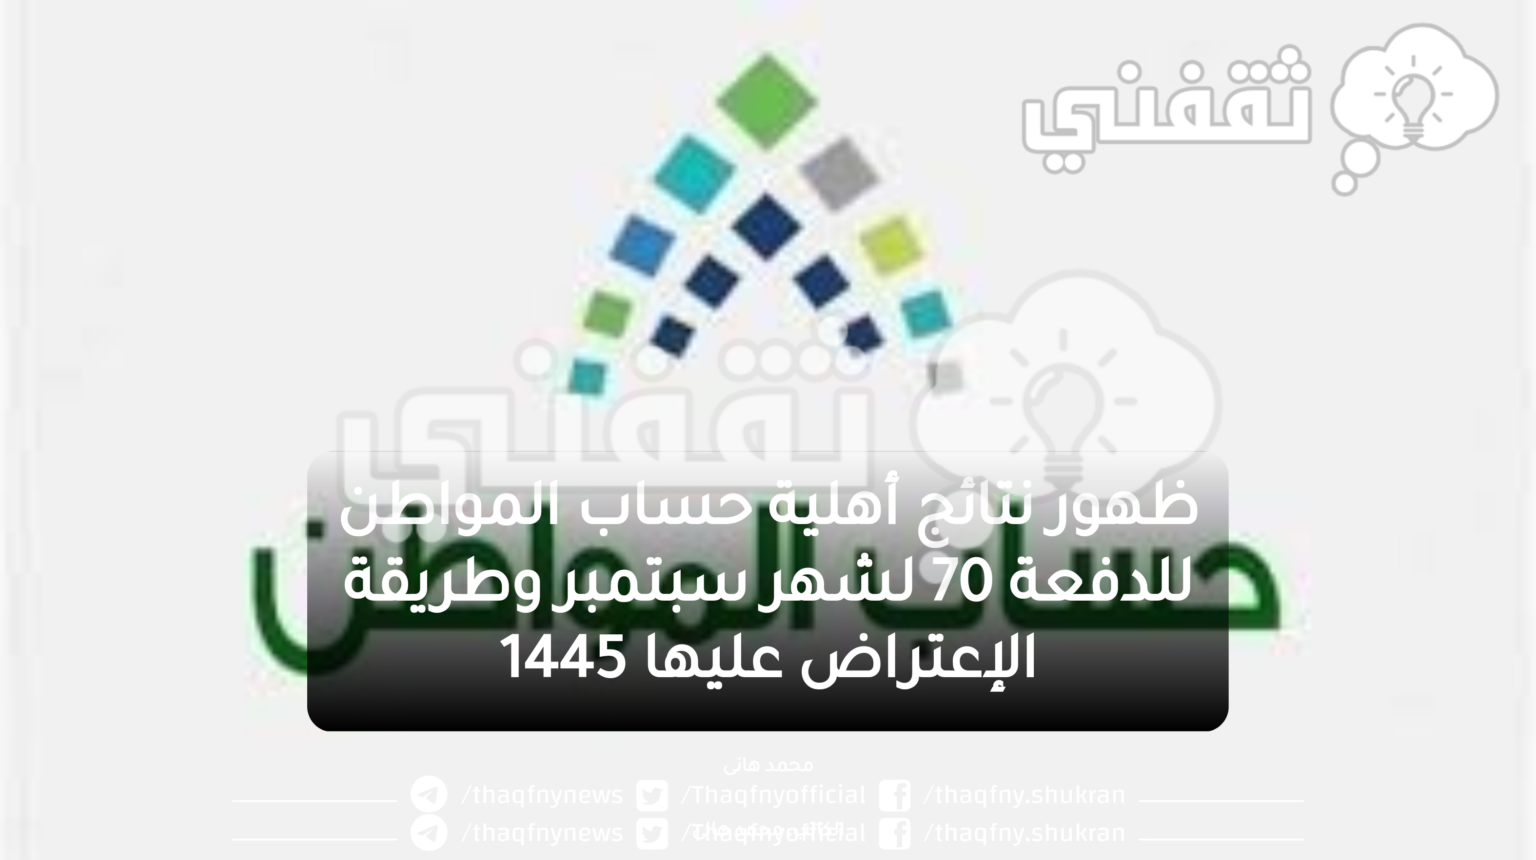 ظهور نتائج أهلية حساب المواطن للدفعة 70 لشهر سبتمبر وطريقة الإعتراض عليها 1445 - مدونة التقنية العربية